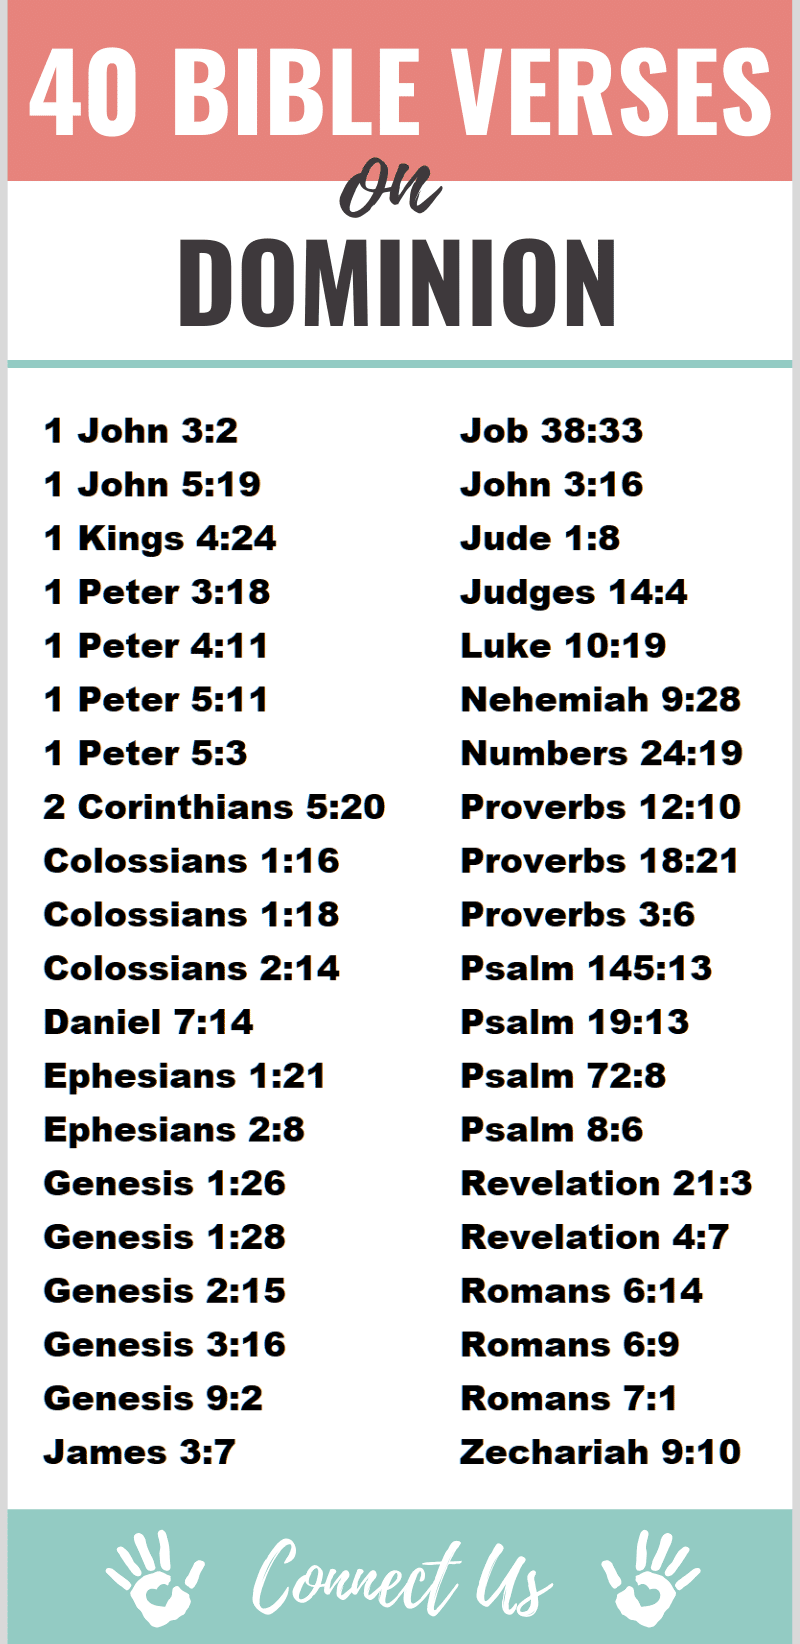 Versículos bíblicos sobre el dominio y la autoridad